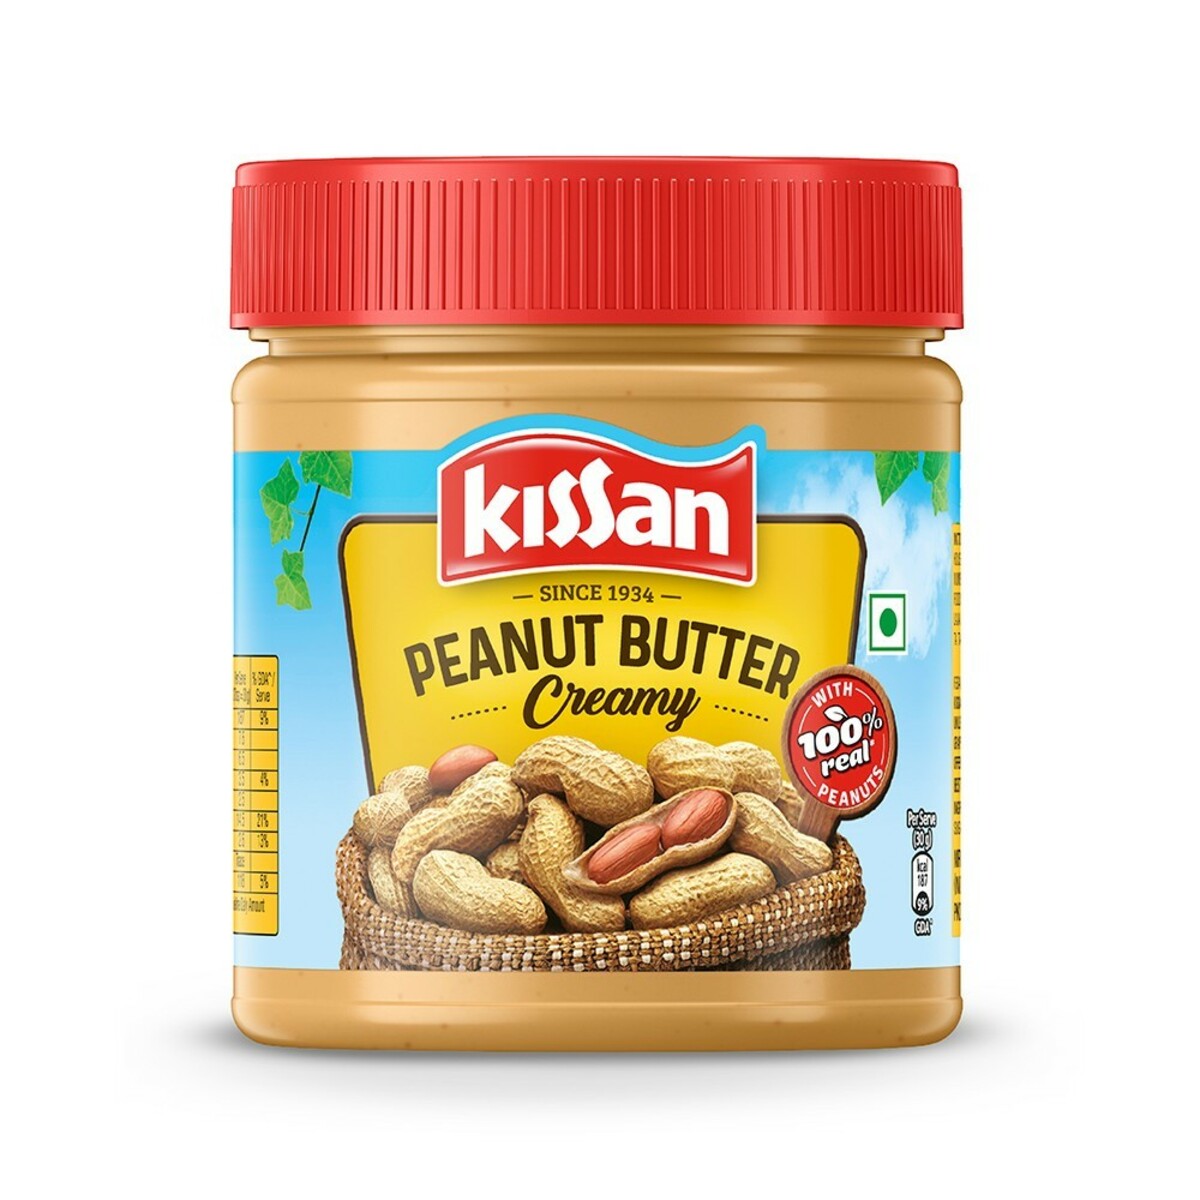 Kissan Peanut Butter 350g